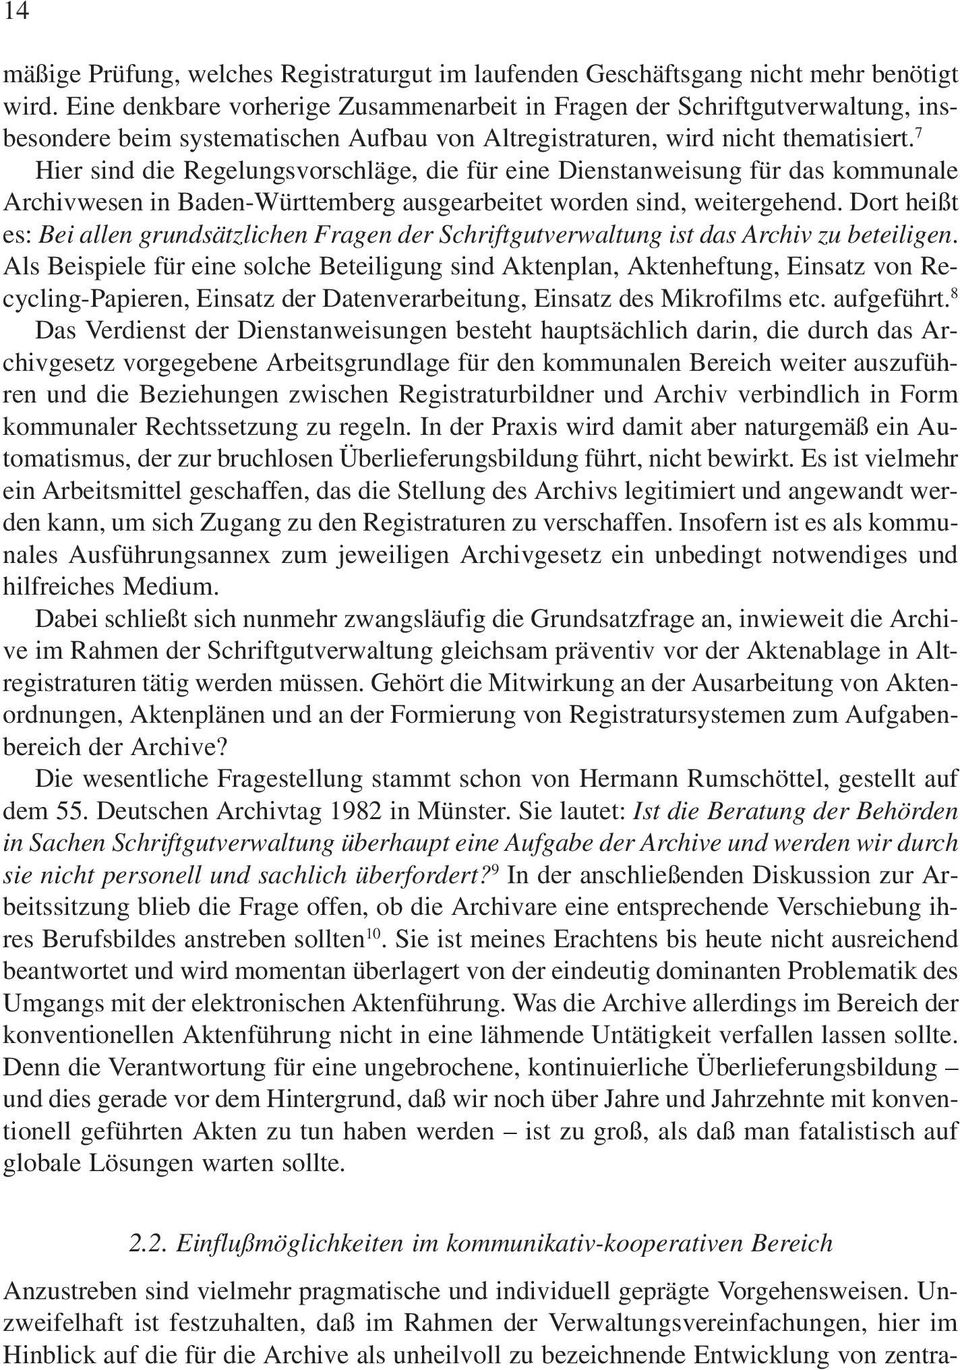 7 Hier sind die Regelungsvorschläge, die für eine Dienstanweisung für das kommunale Archivwesen in Baden-Württemberg ausgearbeitet worden sind, weitergehend.